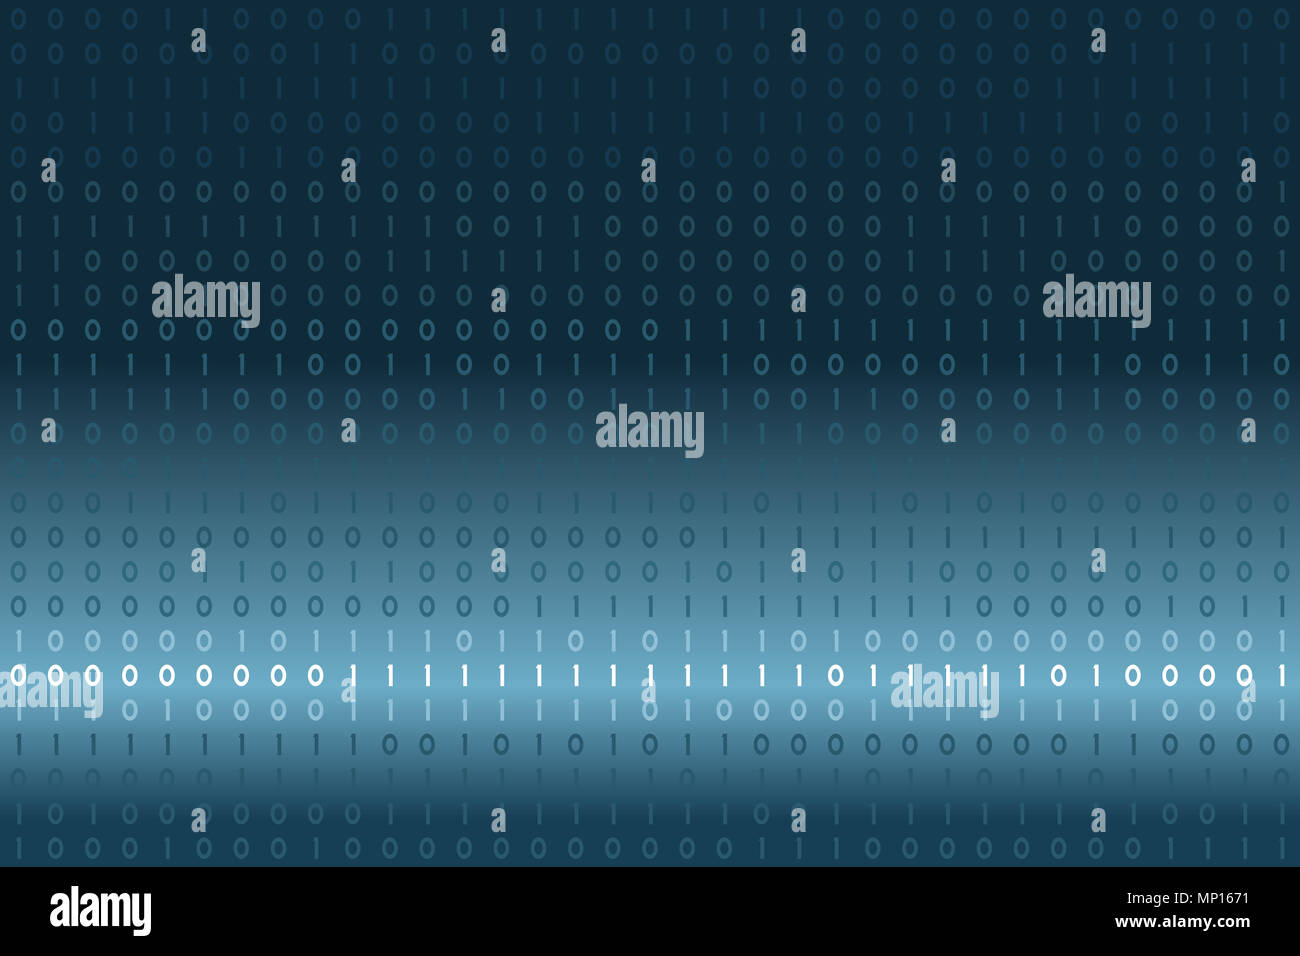 Digitale binäre Daten auf Blau und Weiß Farbverlauf Hintergrund. Moderne, Wissenschaft, Technik, Computer Viren, Hacking, Network im Cyberspace Konzept. Stockfoto